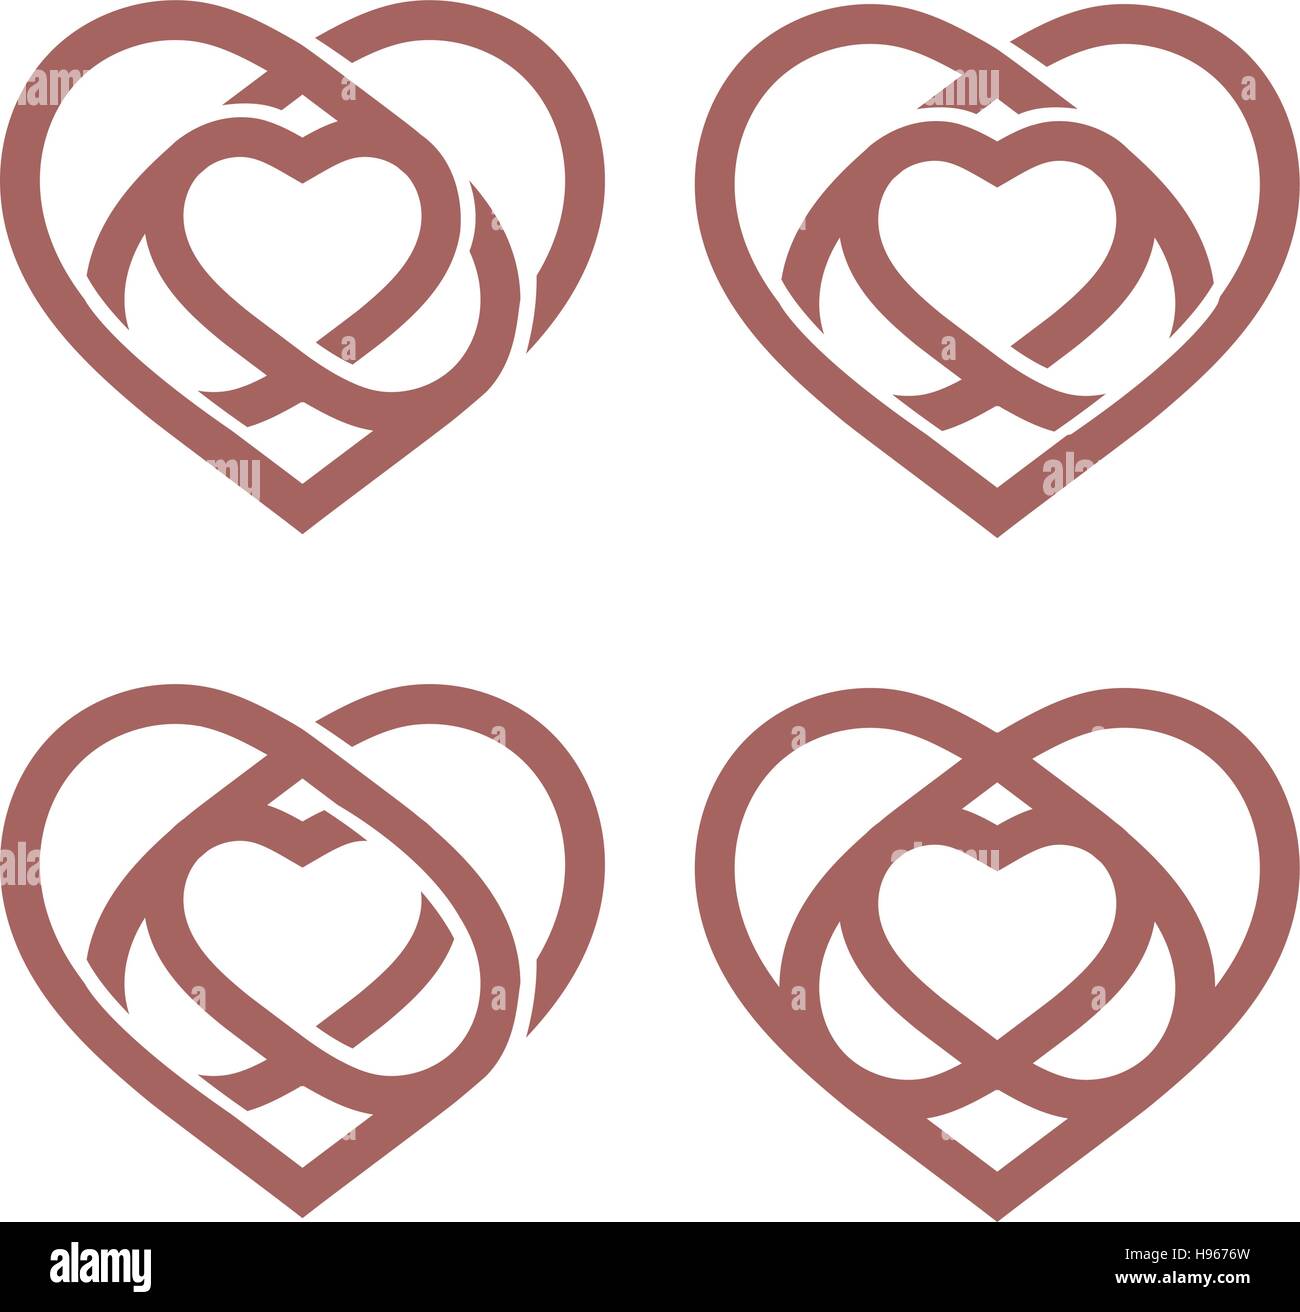 Isolierte abstrakte Monoline Herz Logo Set. Liebe Logos Sammlung. St. Valentines Tag Symbol. Hochzeit-Symbol. Amour-Zeichen. Kardiologie-Emblem. Vektor-Illustration. Stock Vektor